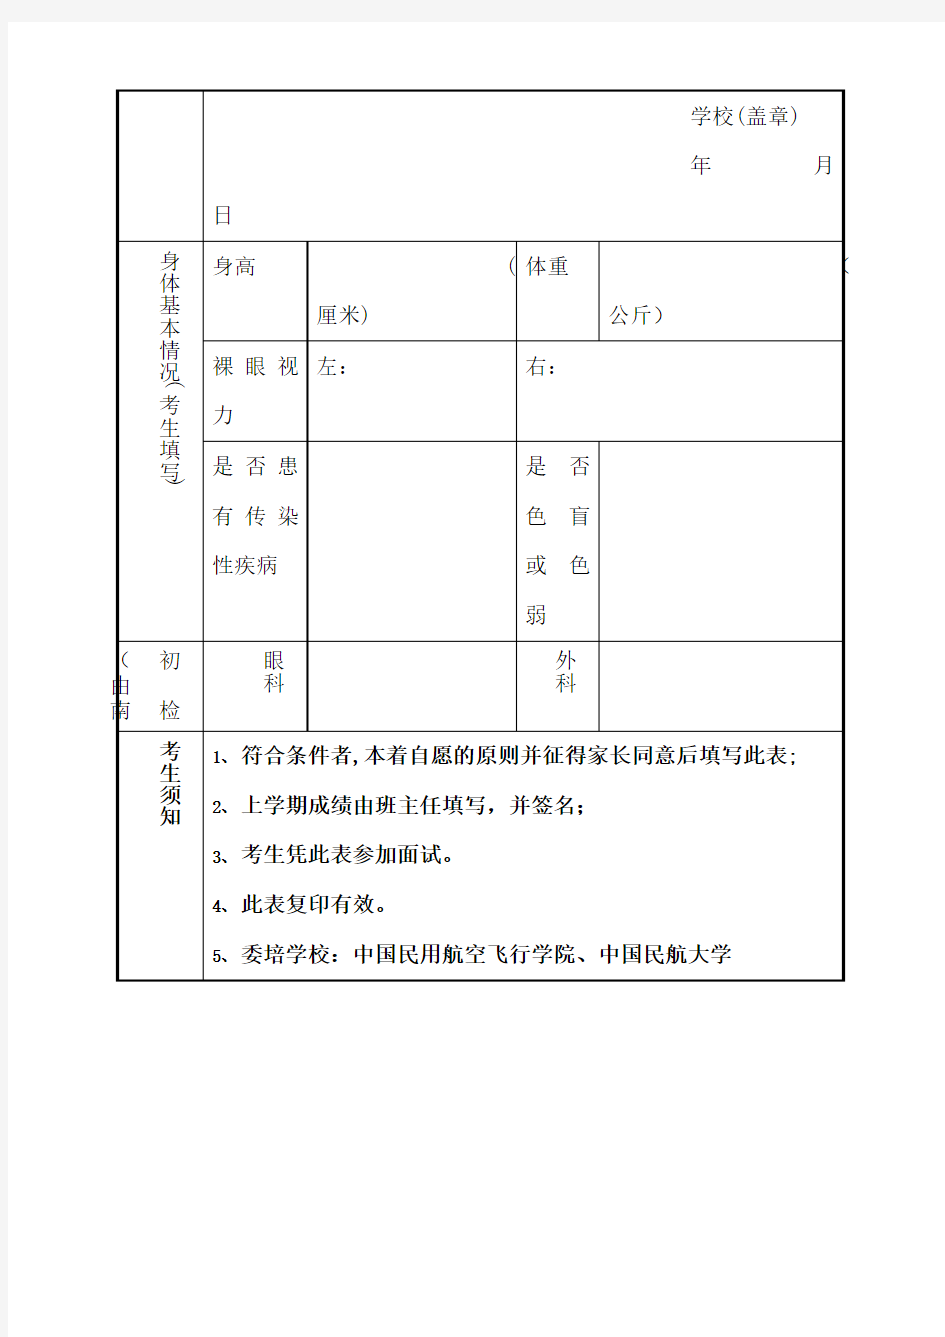 中国南方航空股份有限公司招收高中毕业生飞行学员报名表[001]